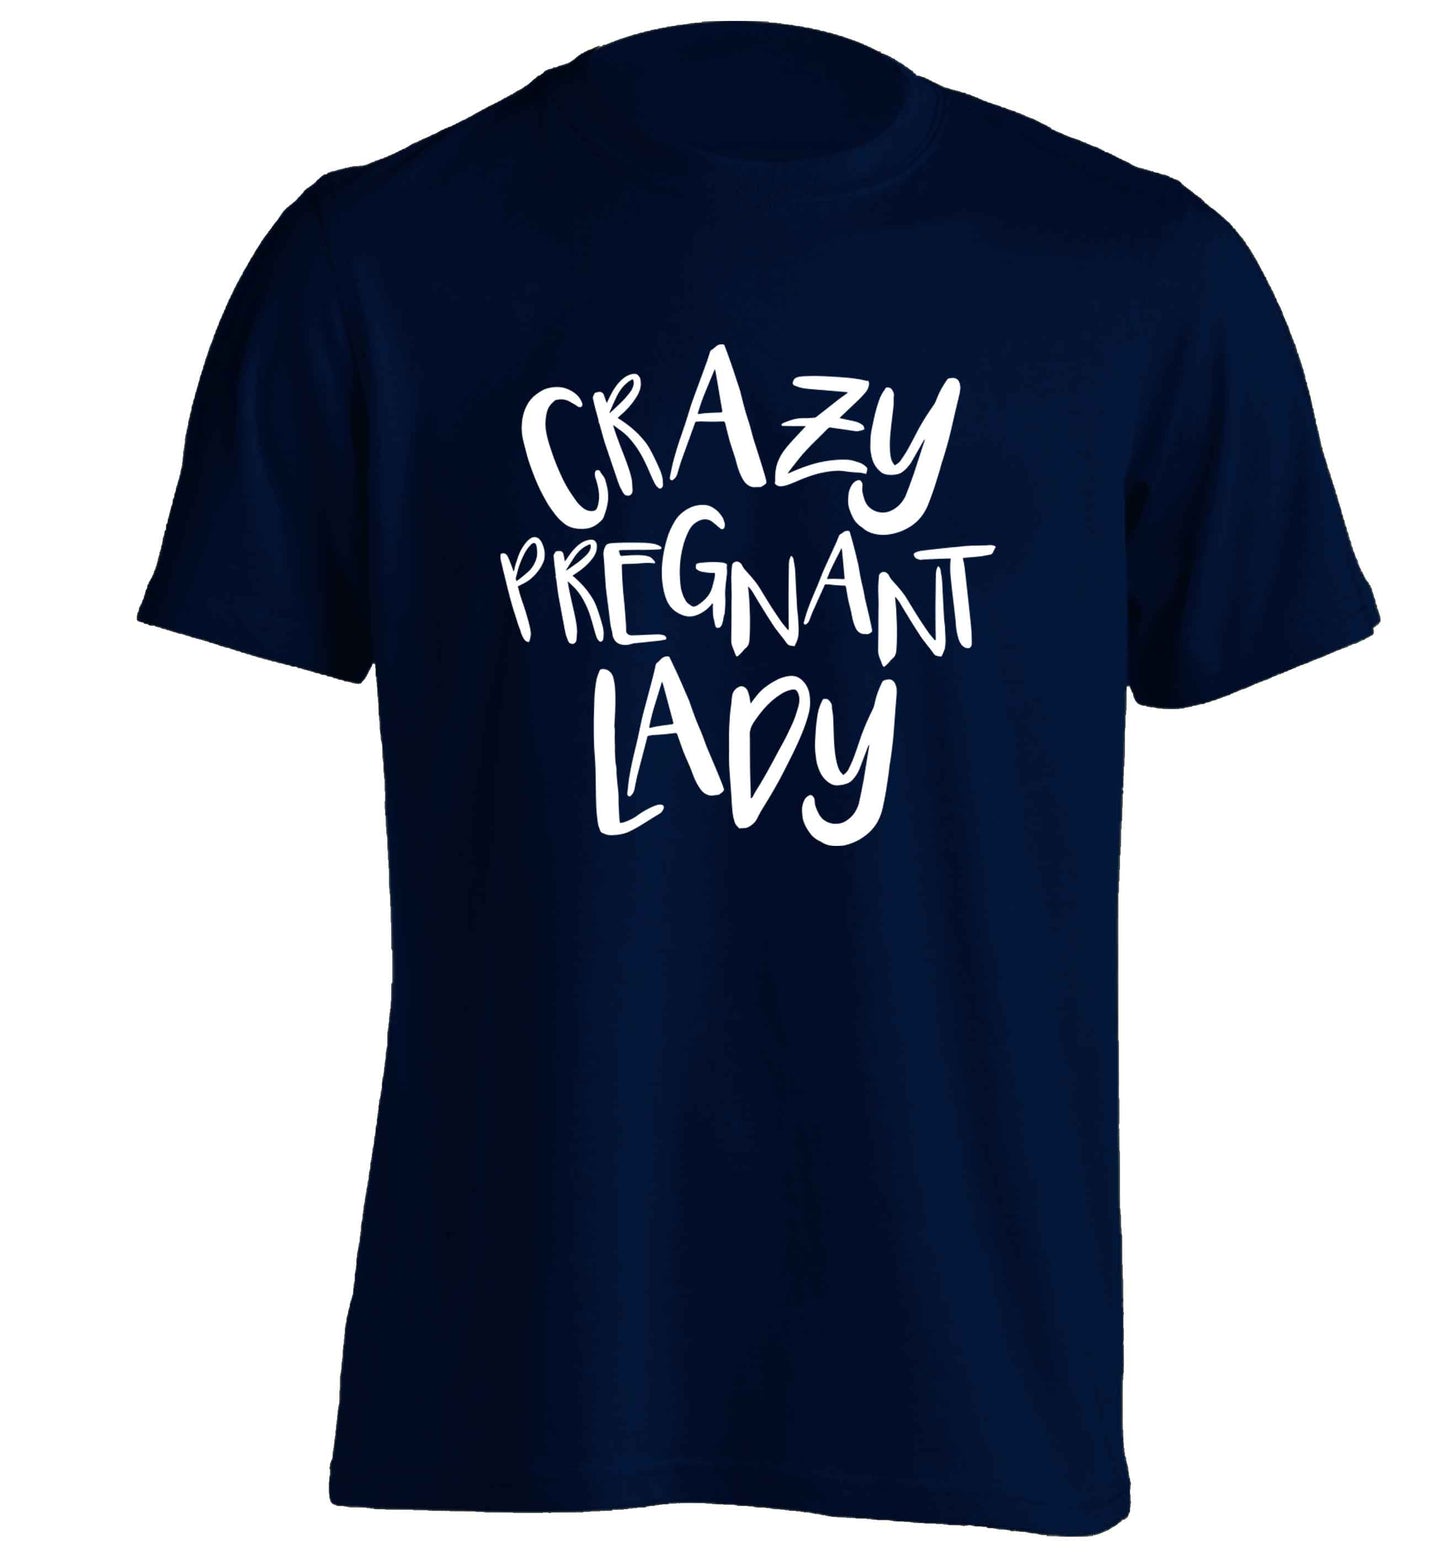 Crazy pregnant lady adults unisex navy Tshirt 2XL